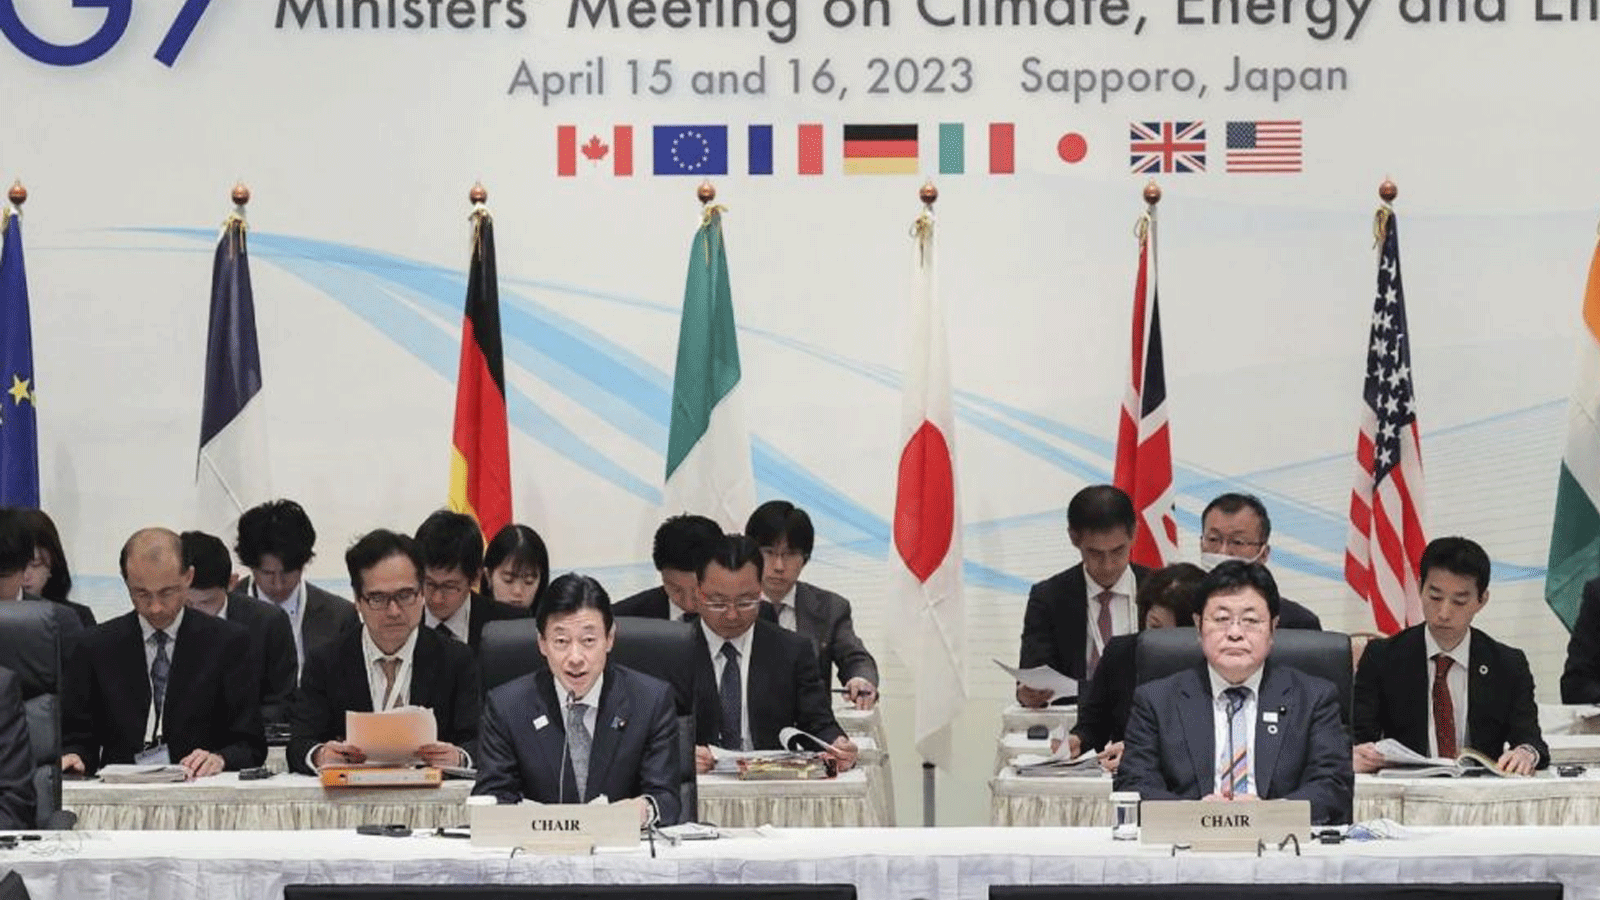 لقطة من اجتماع وزراء دول مجموعة السبع في اليابان. 15 ابريل\نيسان 2023